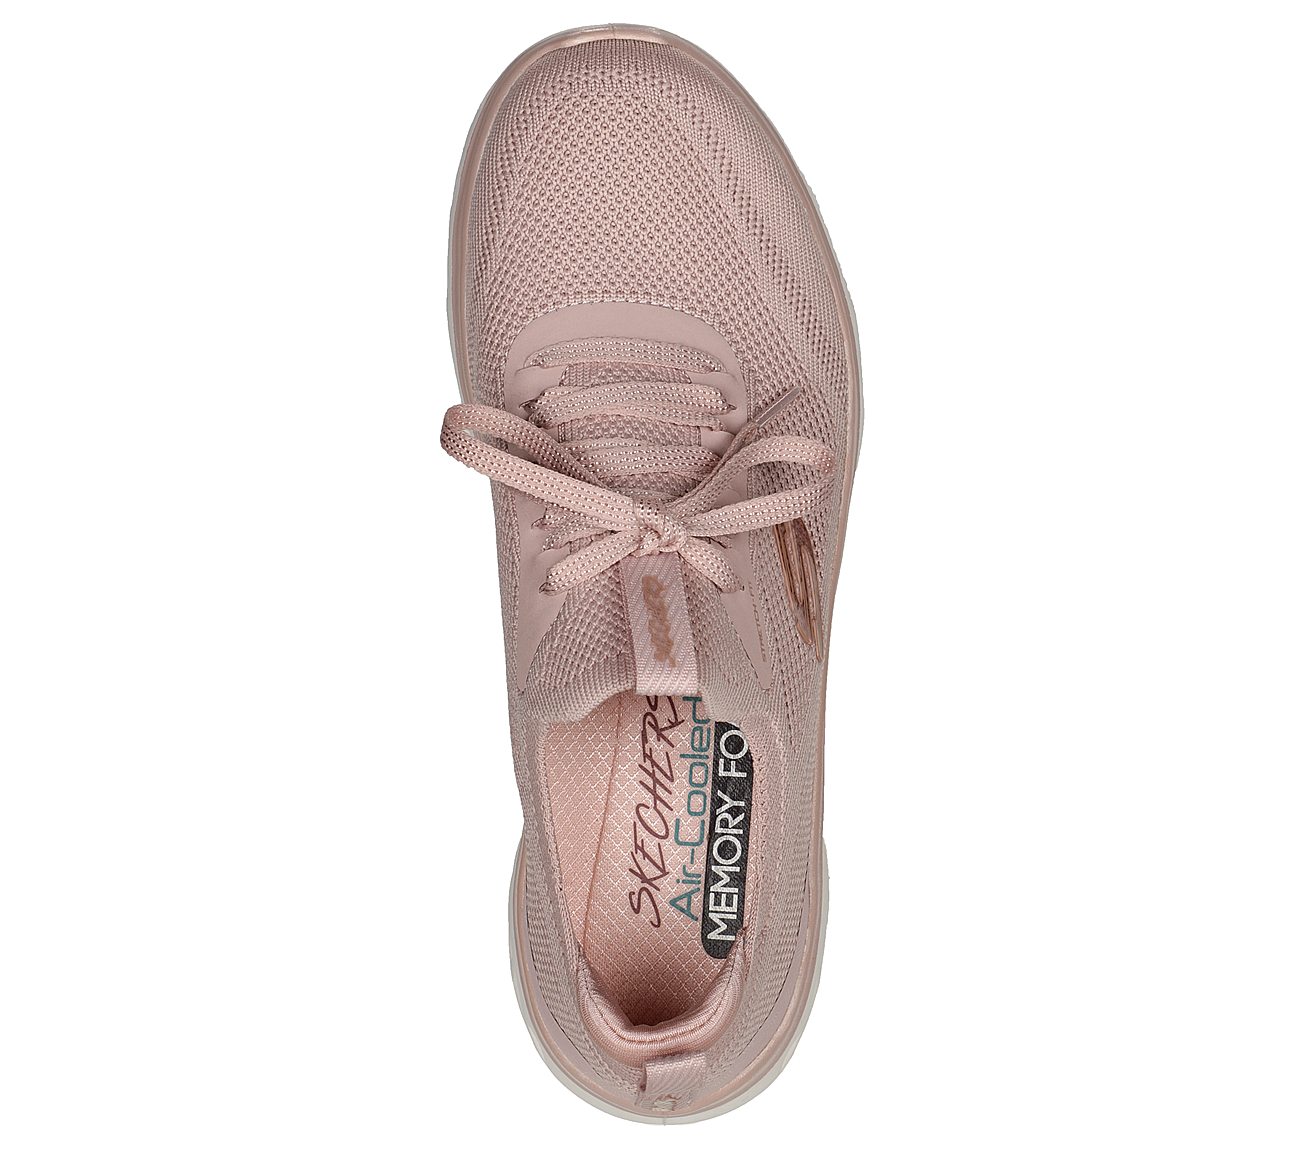 GLIDE-STEP SPORT, ROSE Footwear Top View